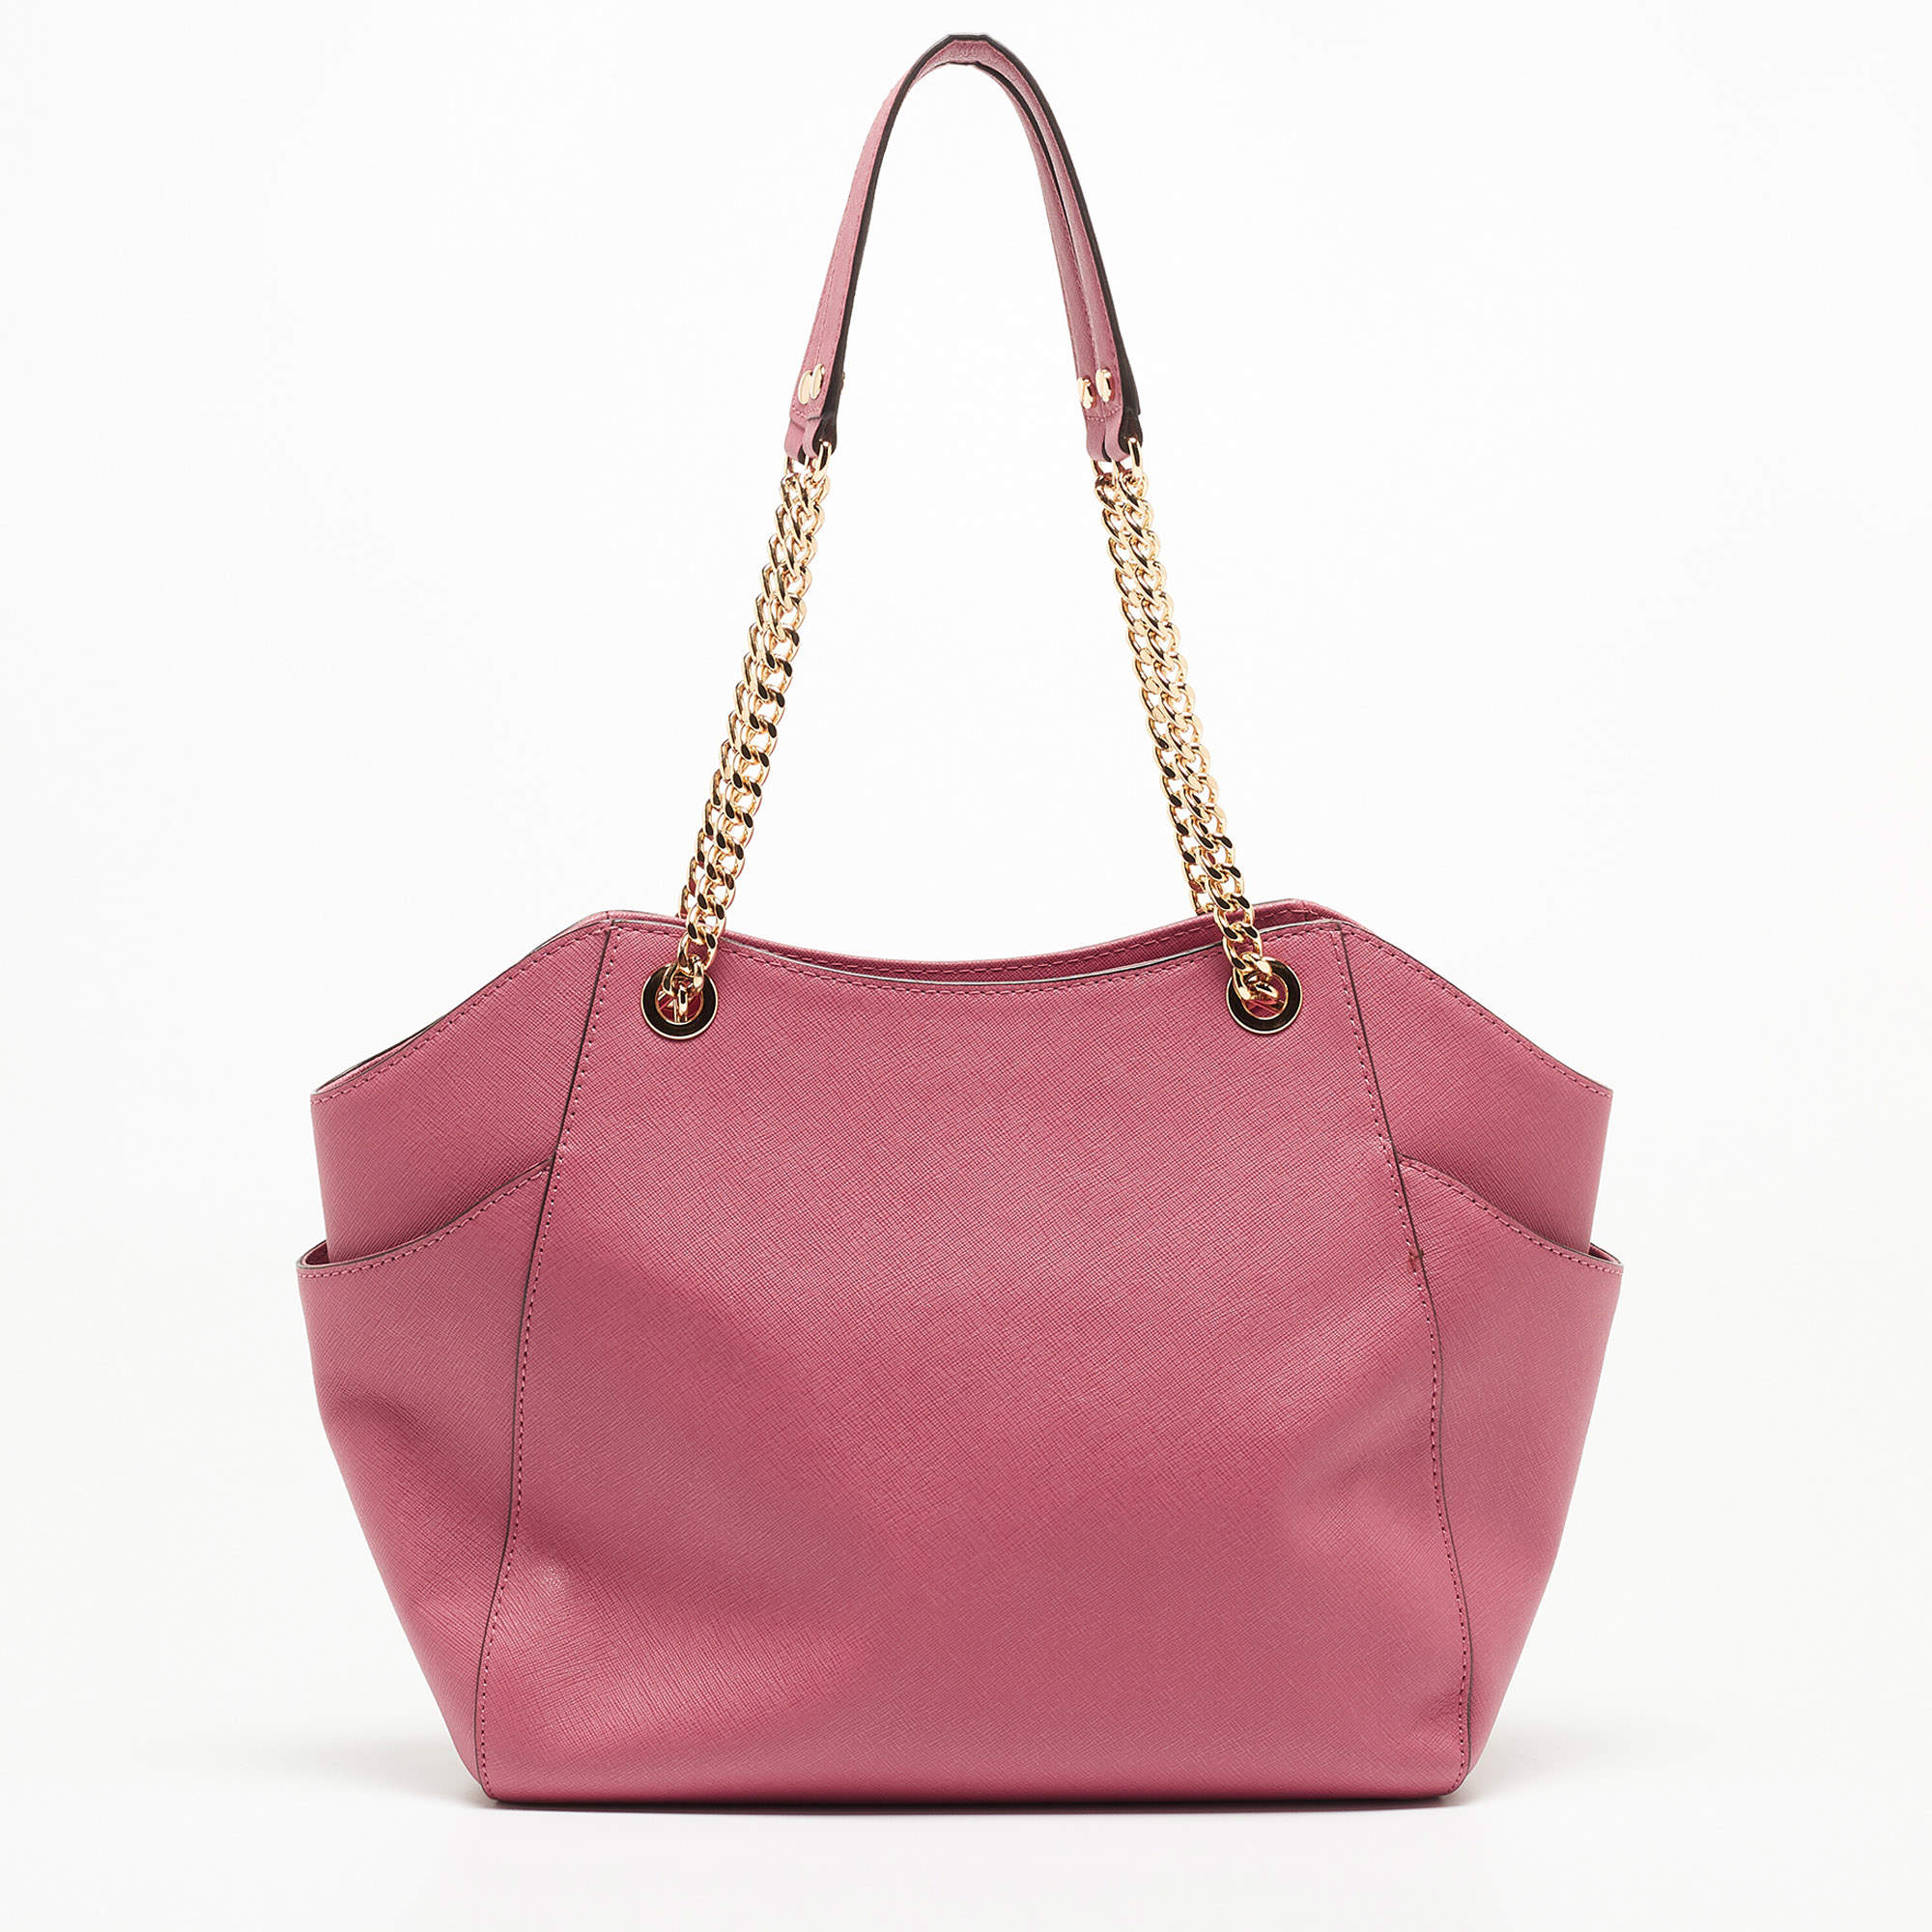 Michael Kors Pink Shoulder Bag